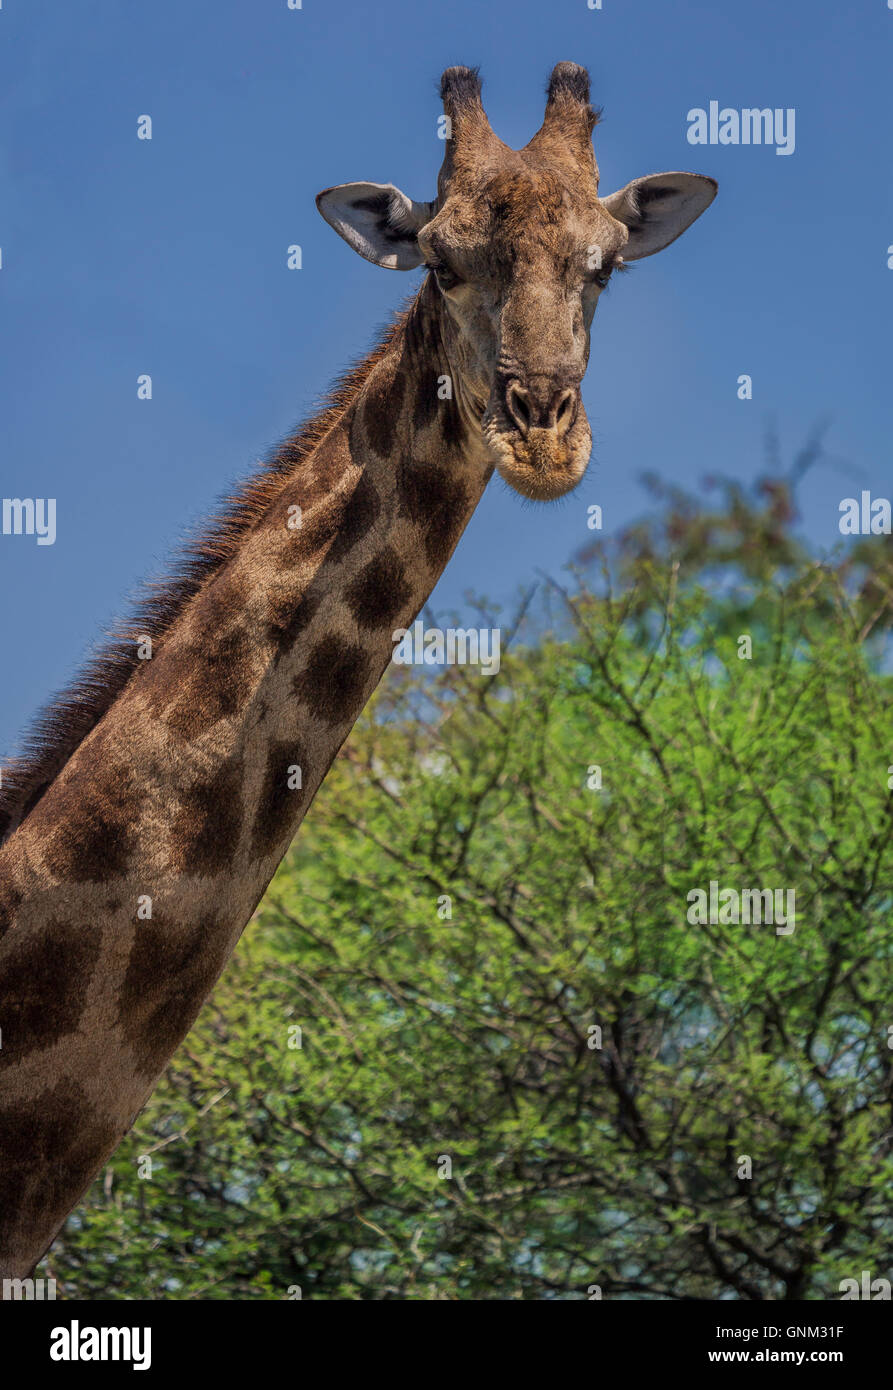 Portrait de girafe, Etosha National Park, Namibie, Afrique Banque D'Images